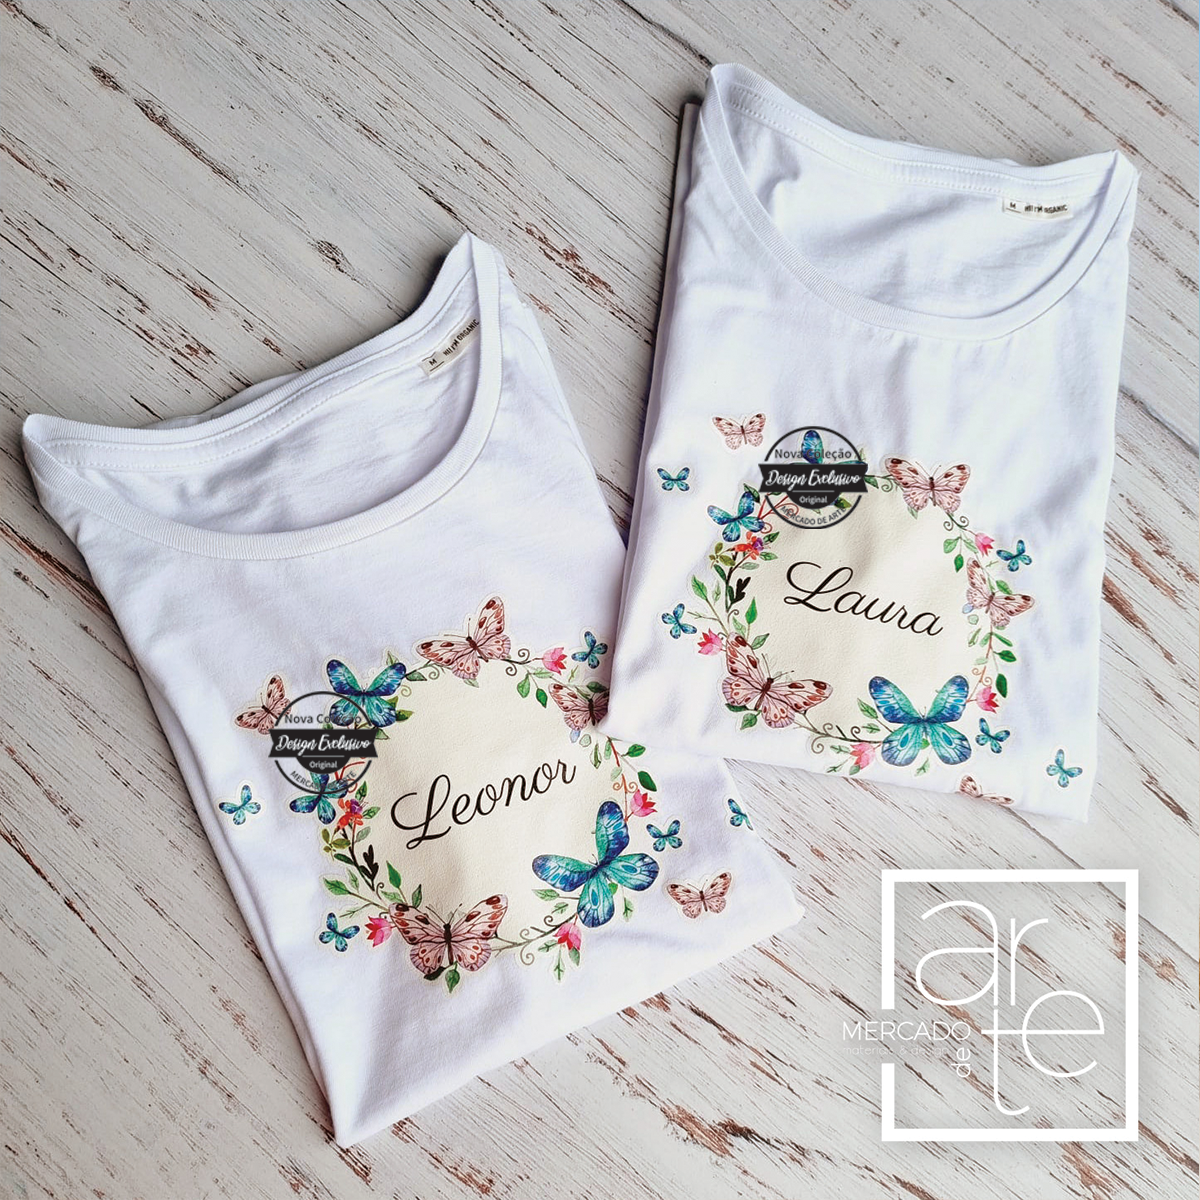 t-shirts 100% algodão com nome e borboletas.Pode personalizar como desejar